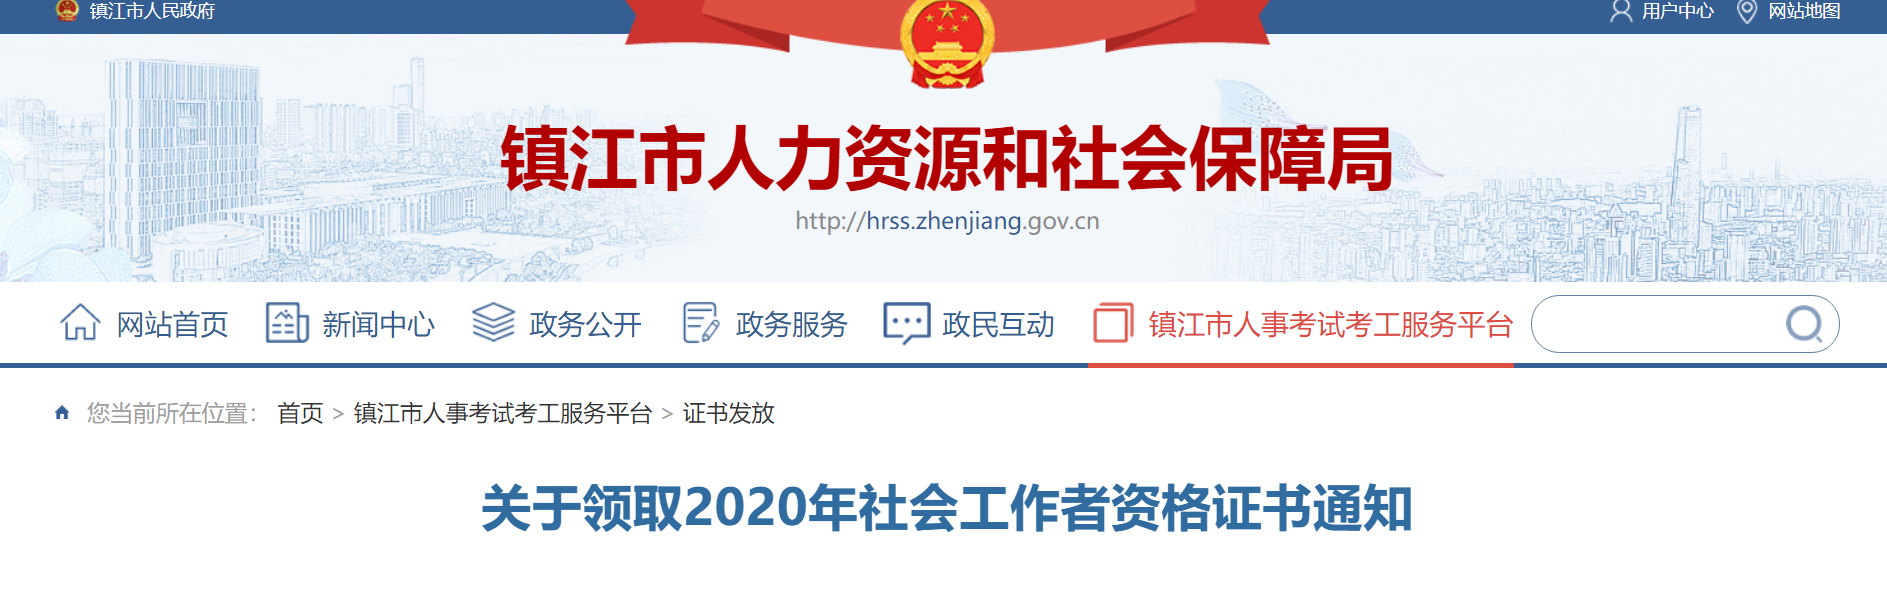 2020年江苏镇江社会工作者资格证书通知